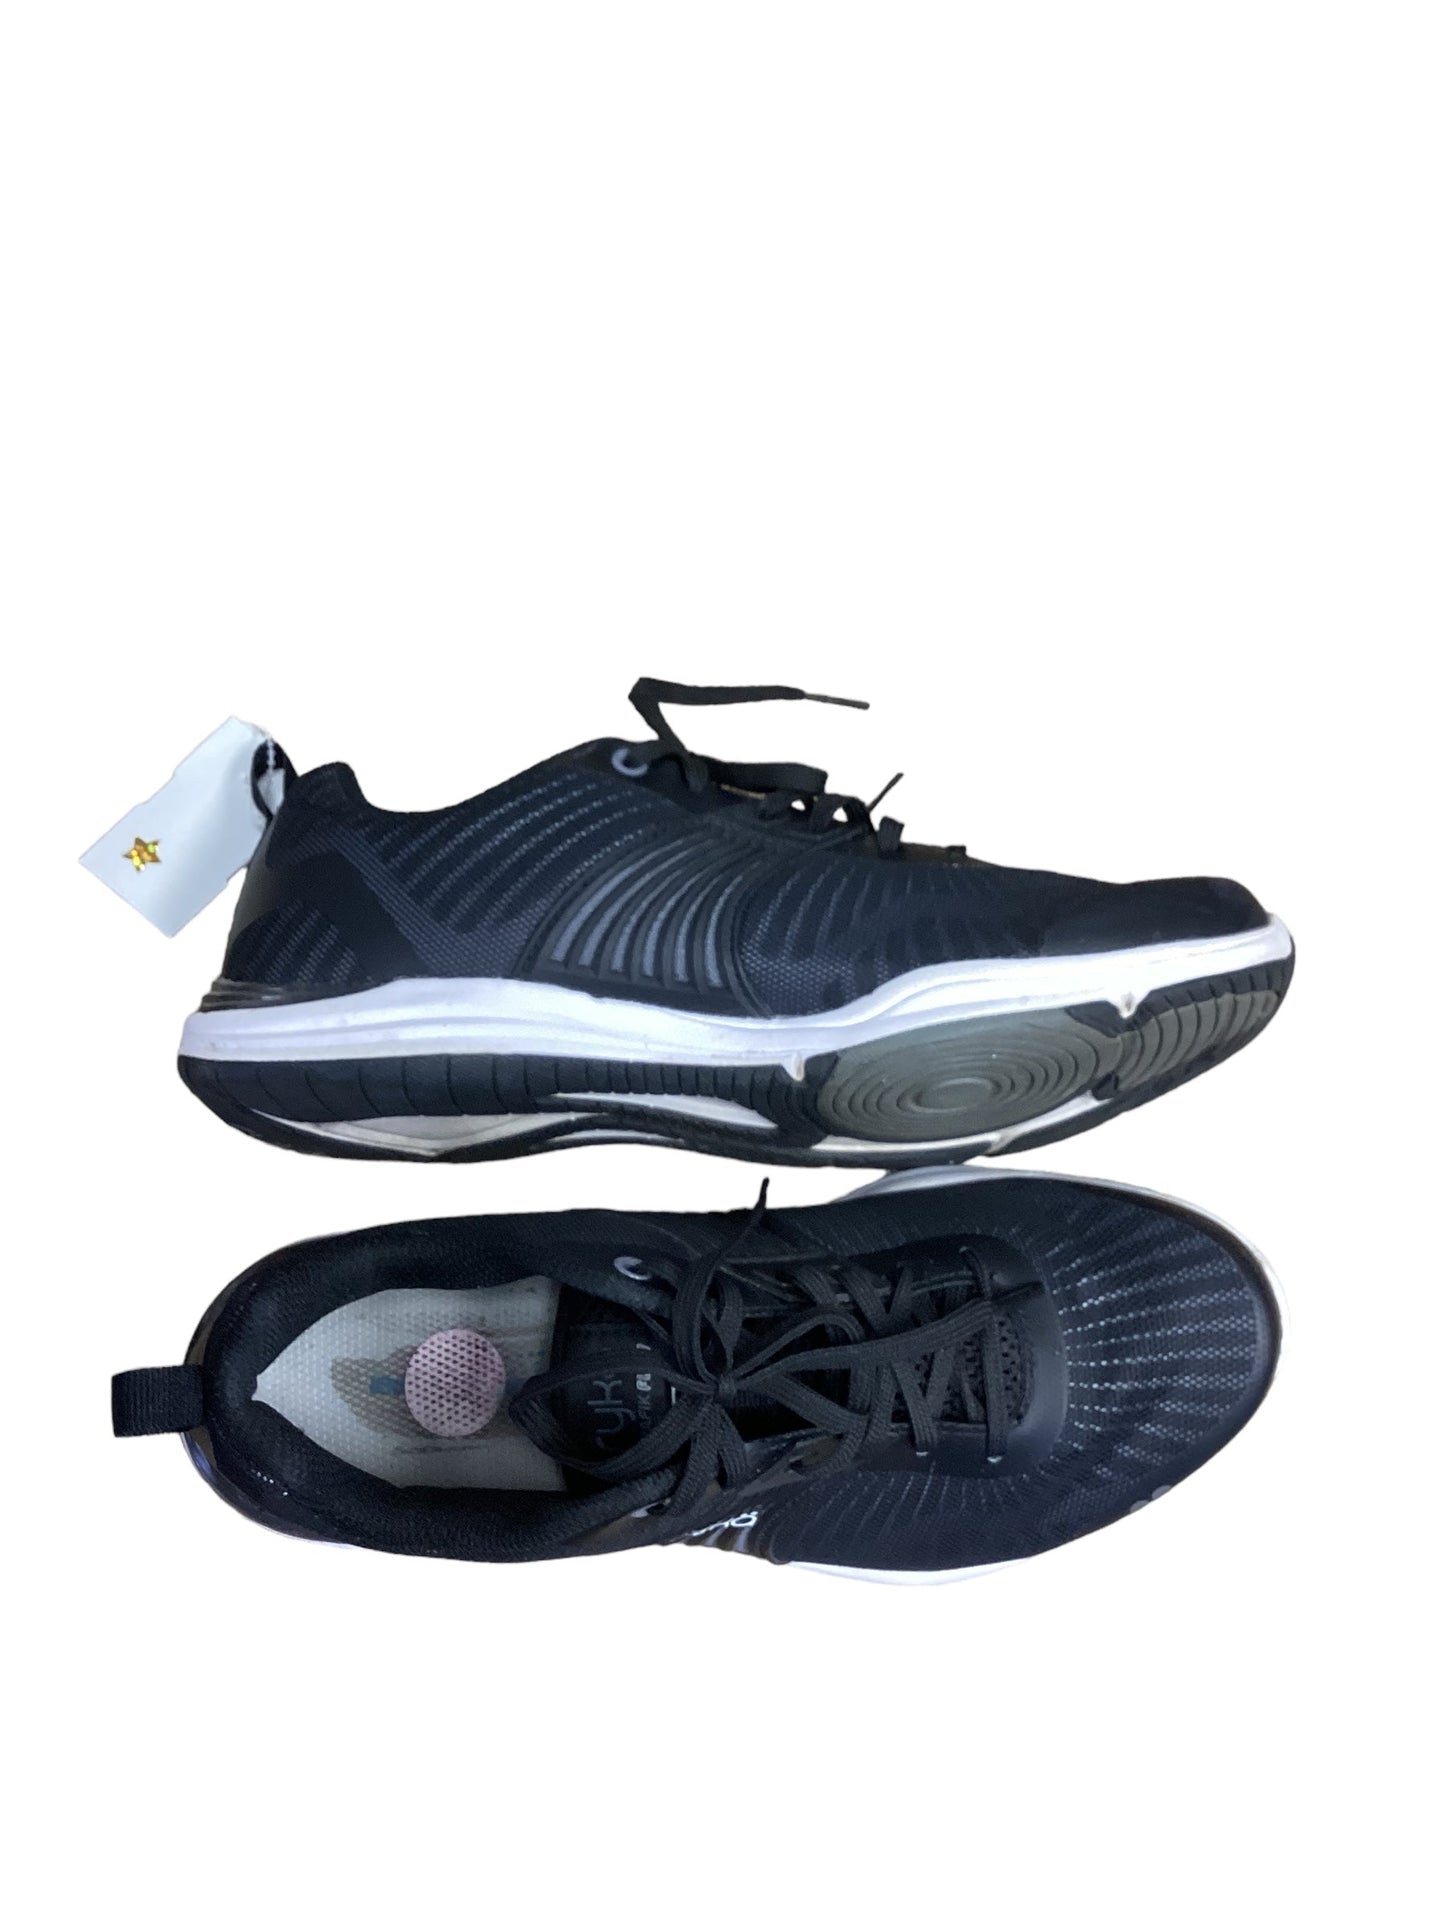 Black Shoes Athletic Ryka, Size 8.5